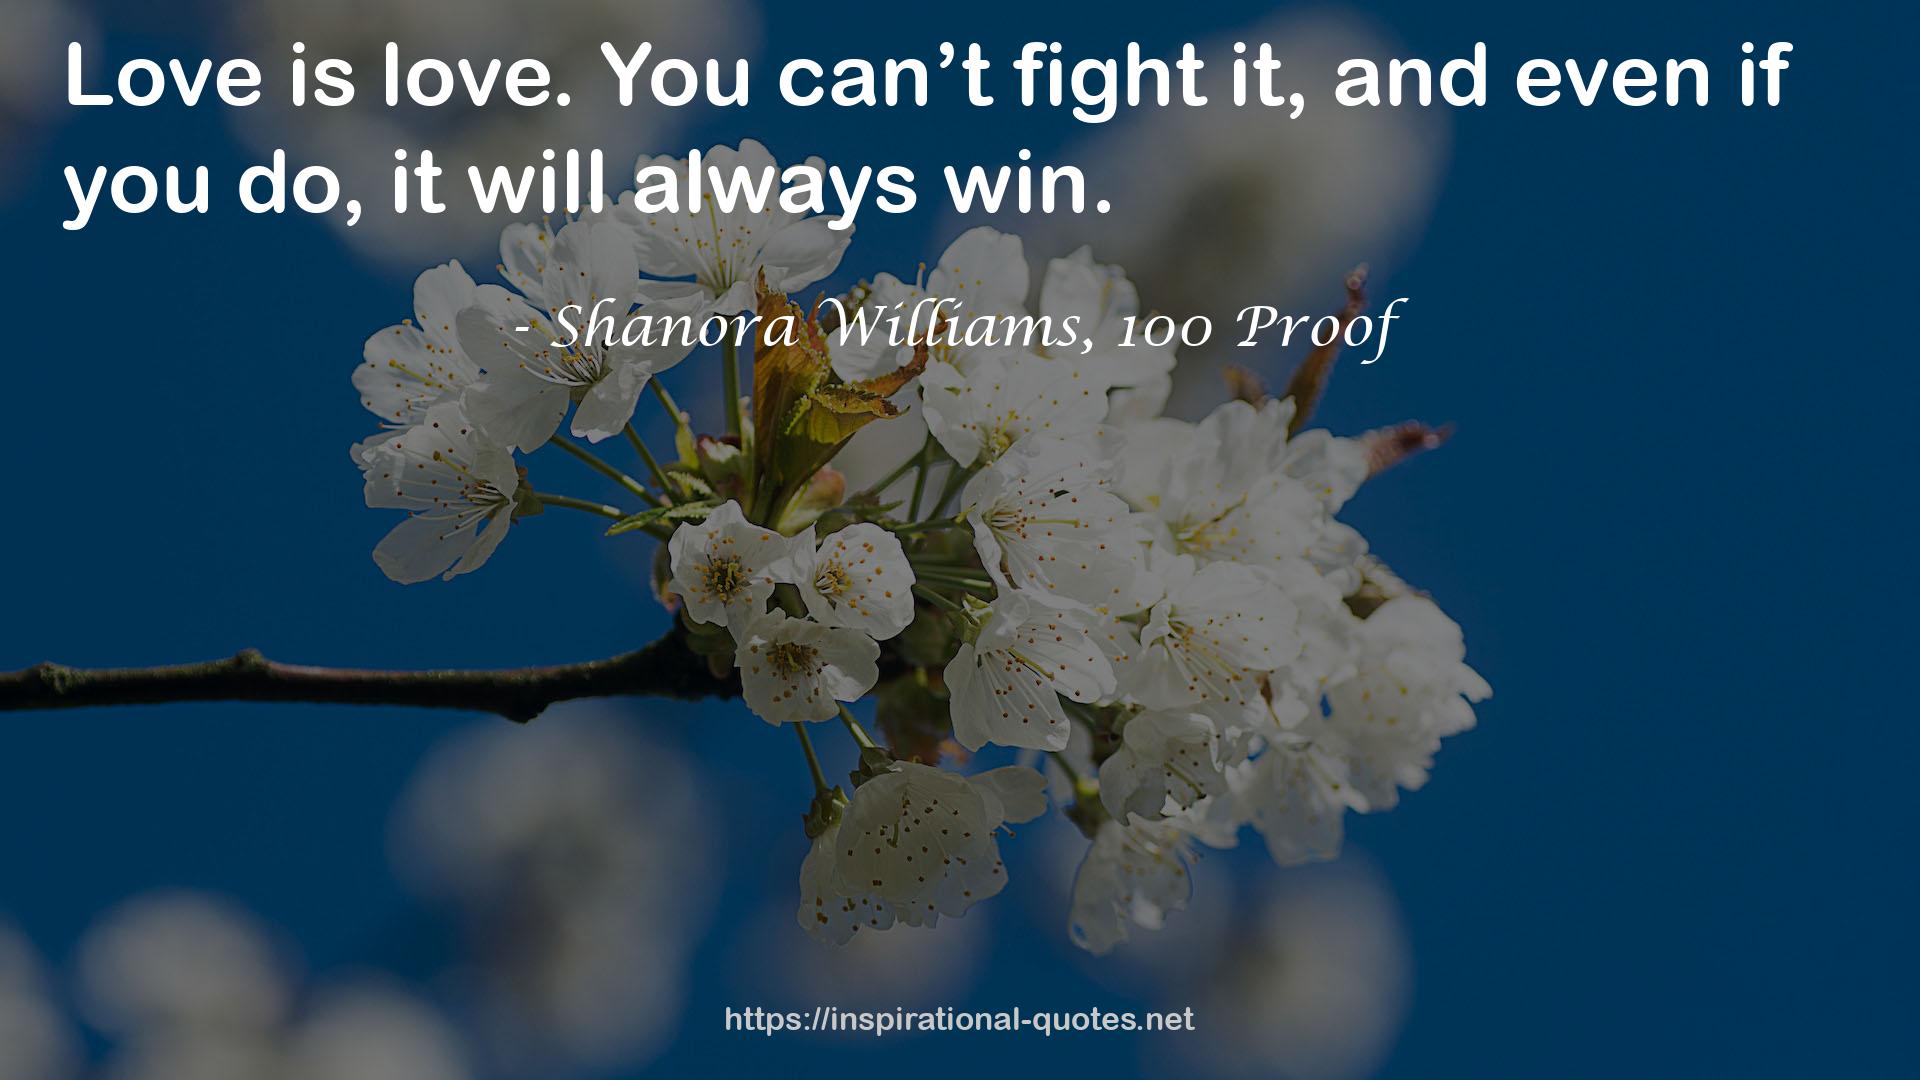 Shanora Williams, 100 Proof QUOTES